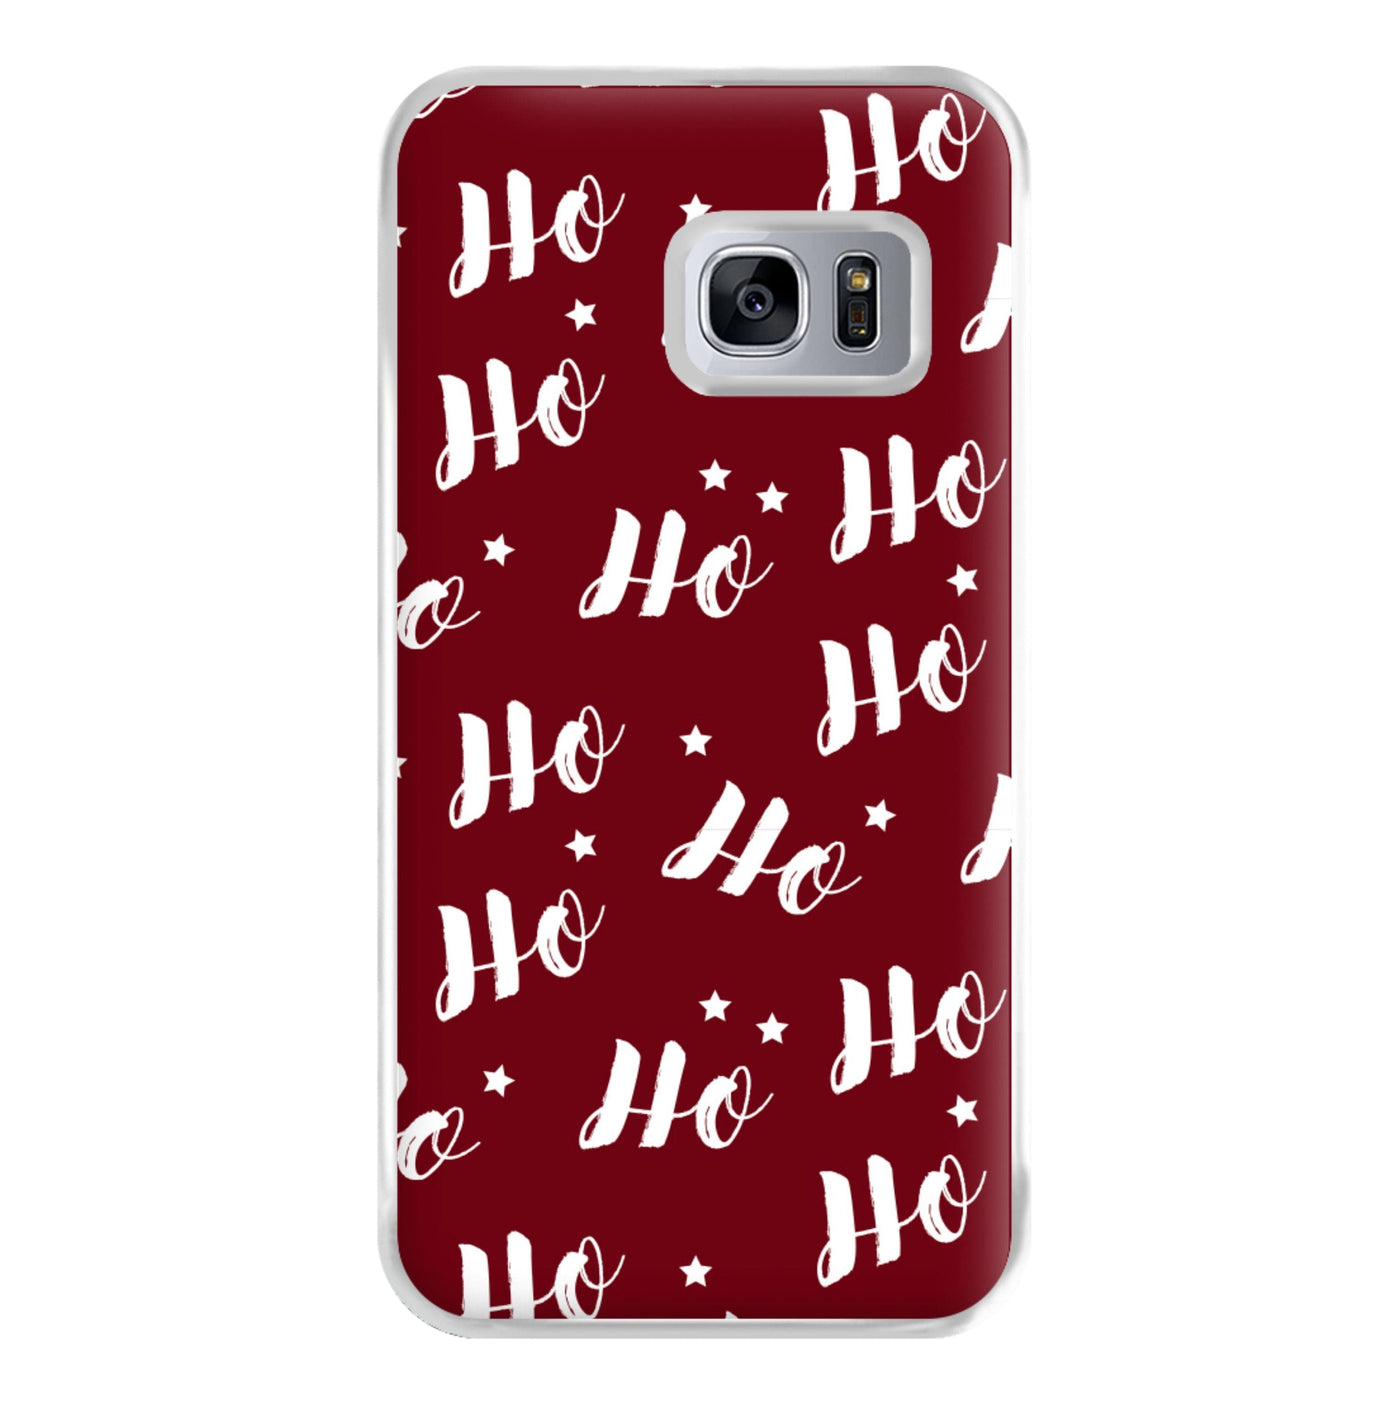 Ho Ho Ho Christmas Pattern Phone Case